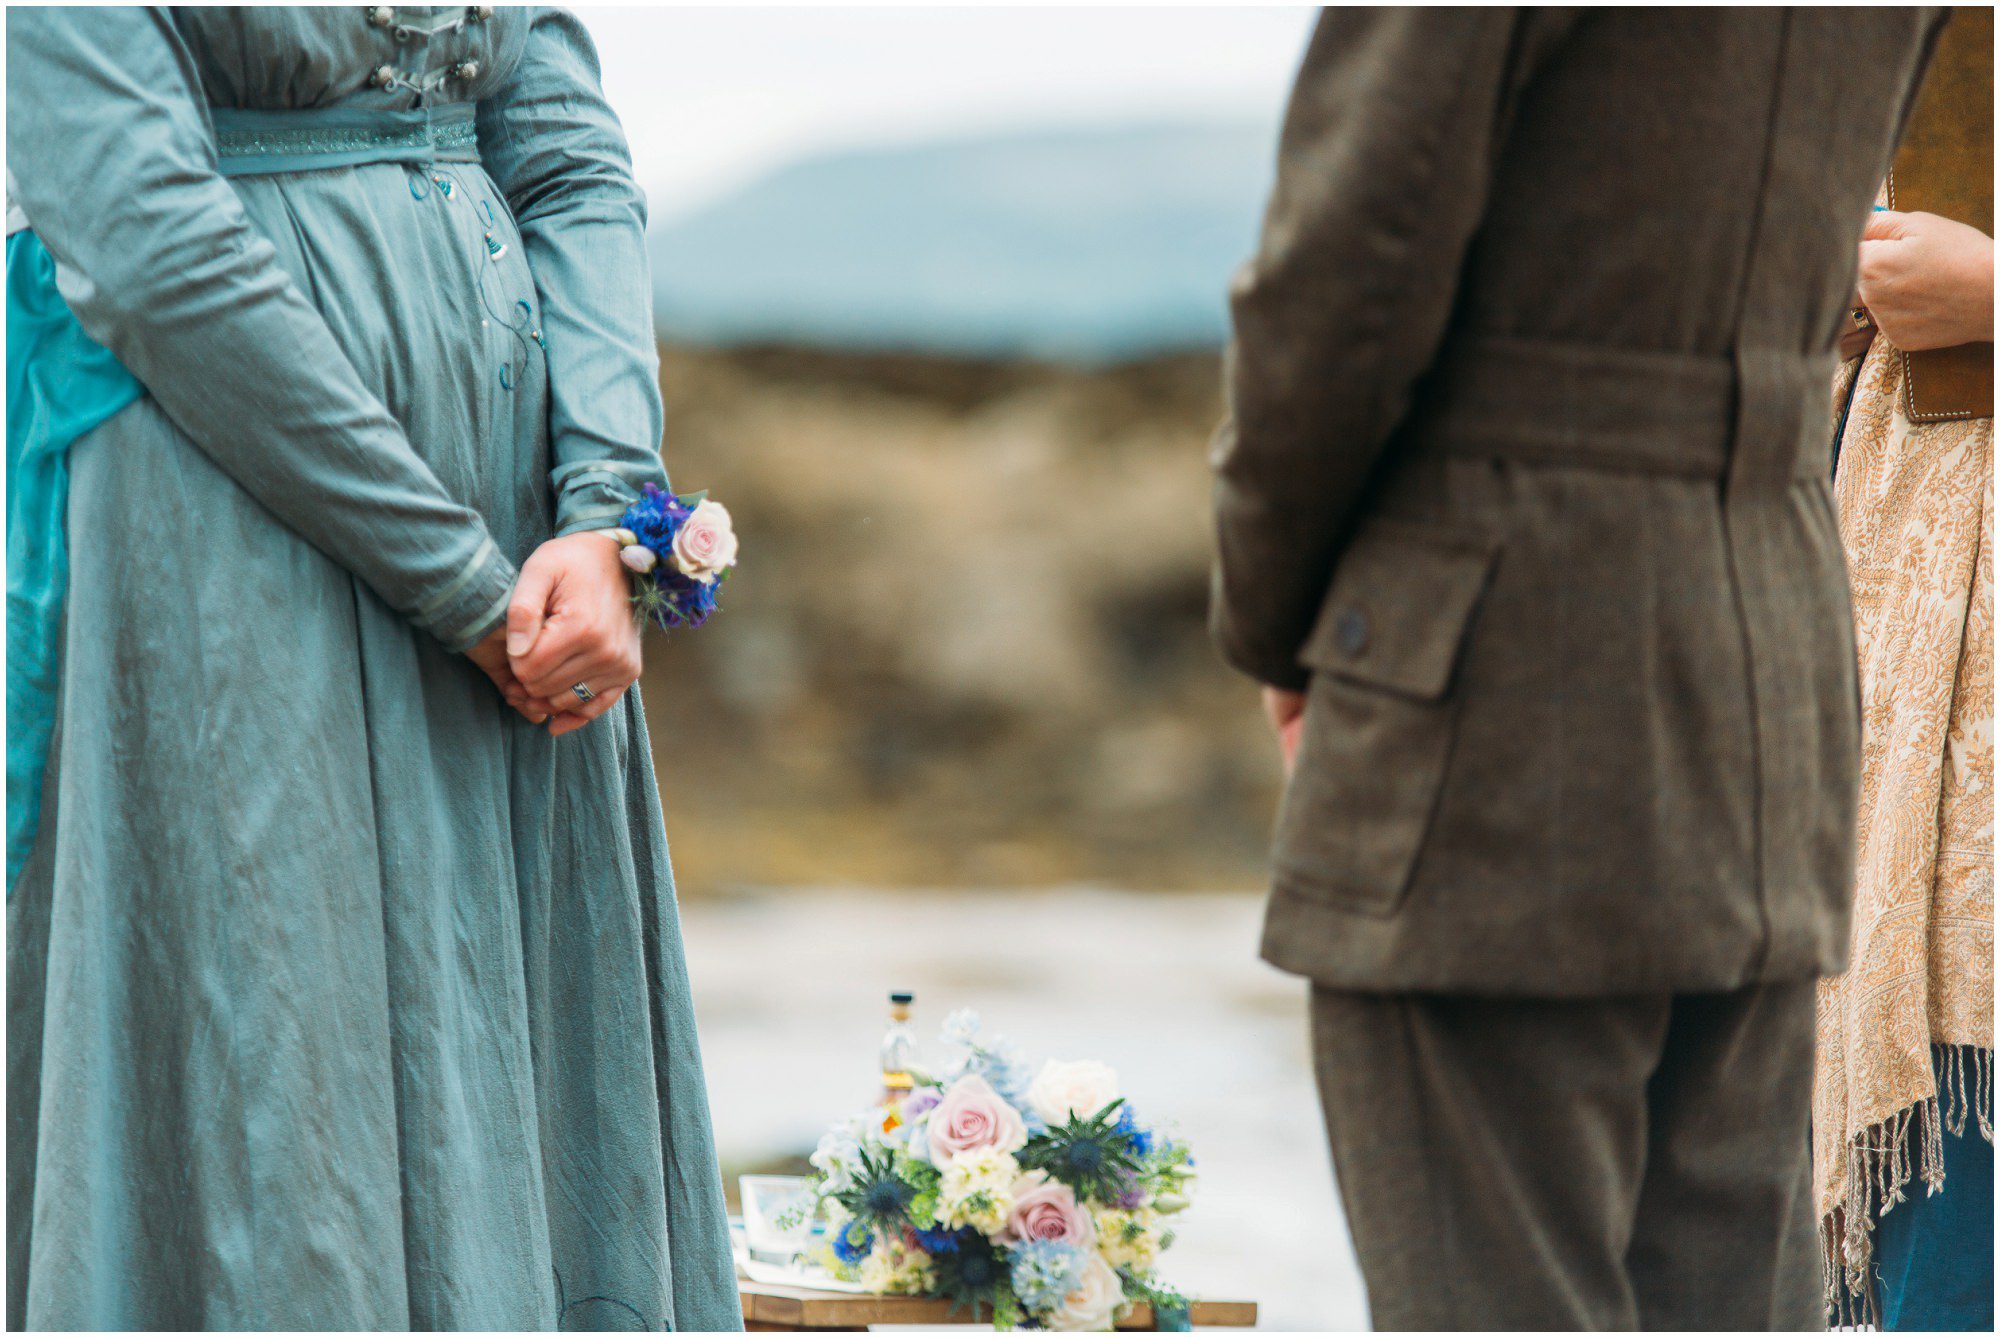 Isle of Skye Beach wedding photography, Morris dancer wedding, musicians wedding, elopement Isle of Skye